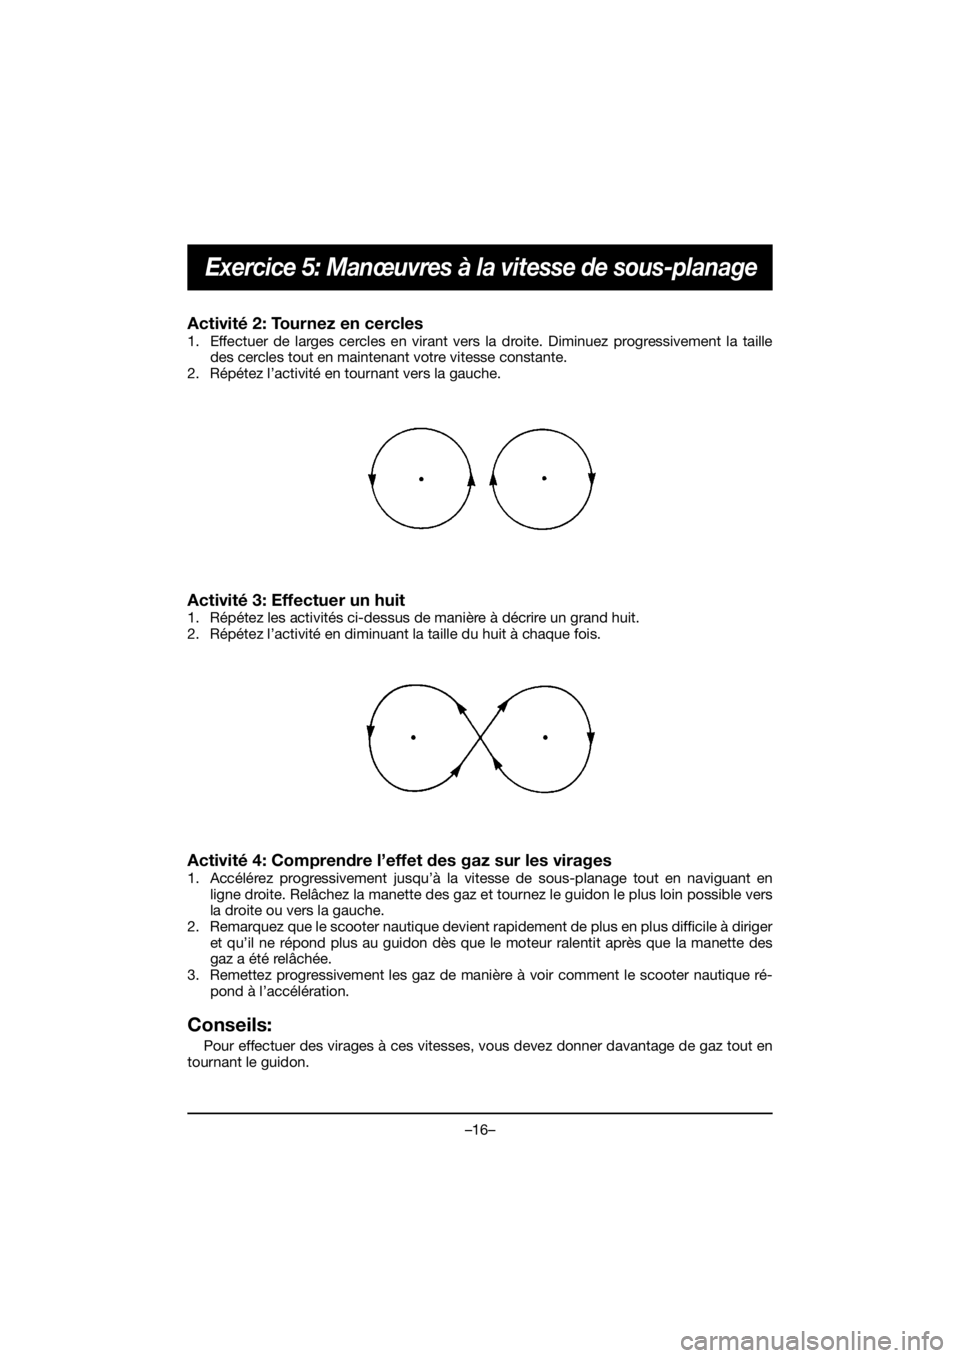 YAMAHA GP1800R SVHO 2020  Manuale duso (in Italian) –16–
Exercice 5: Manœuvres à la vitesse de sous-planage
Activité 2: Tournez en cercles 
1. Effectuer de larges cercles en virant vers la droite. Diminuez progressivement la taille
des cercles t